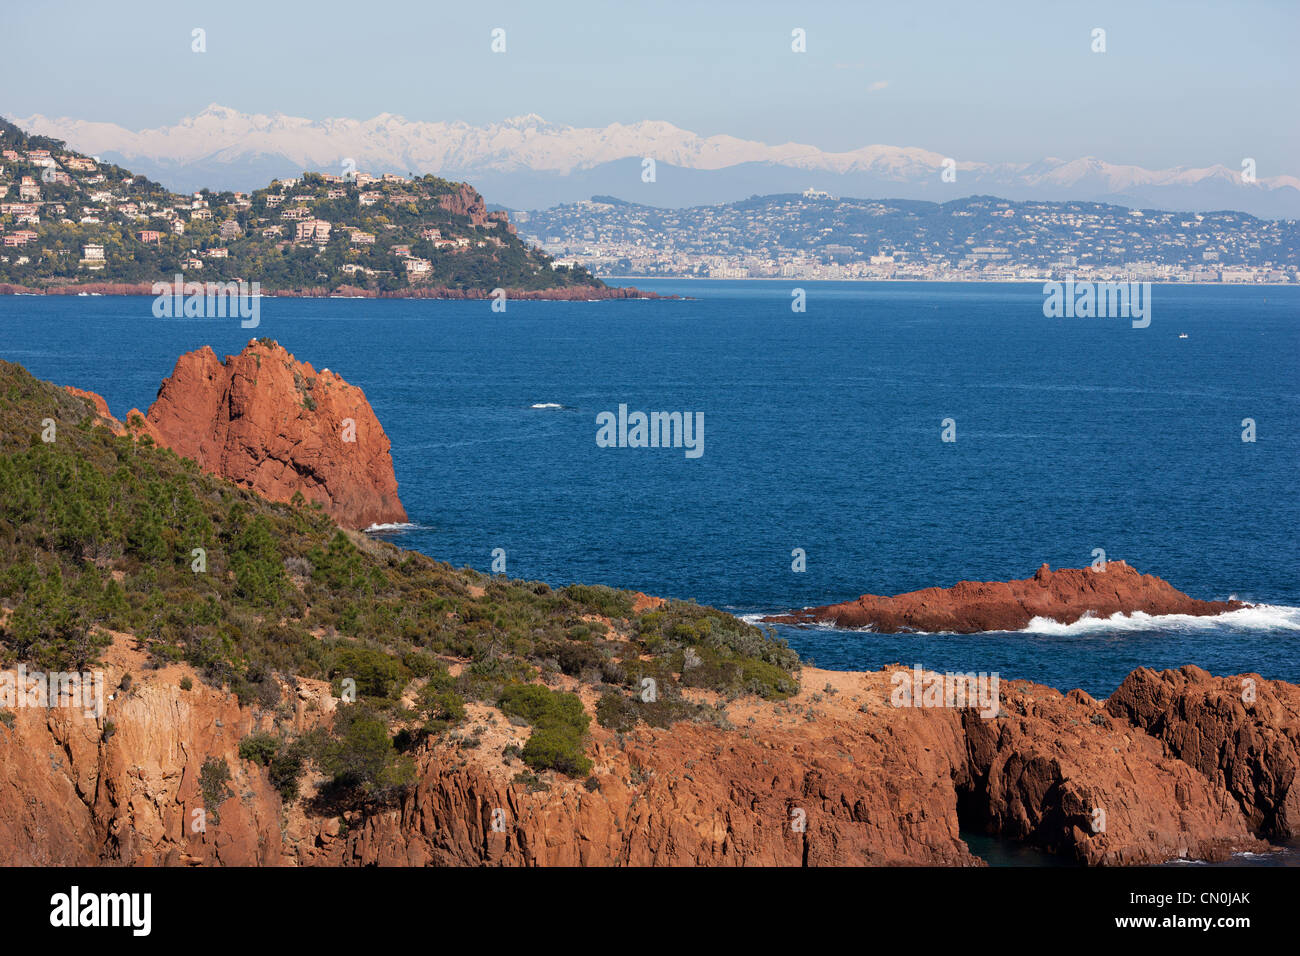 Lujosas villas en un promontorio de roca volcánica roja con Cannes y los Alpes Mercantour en la distancia. Théoule-sur-Mer, Riviera Francesa, Francia. Foto de stock